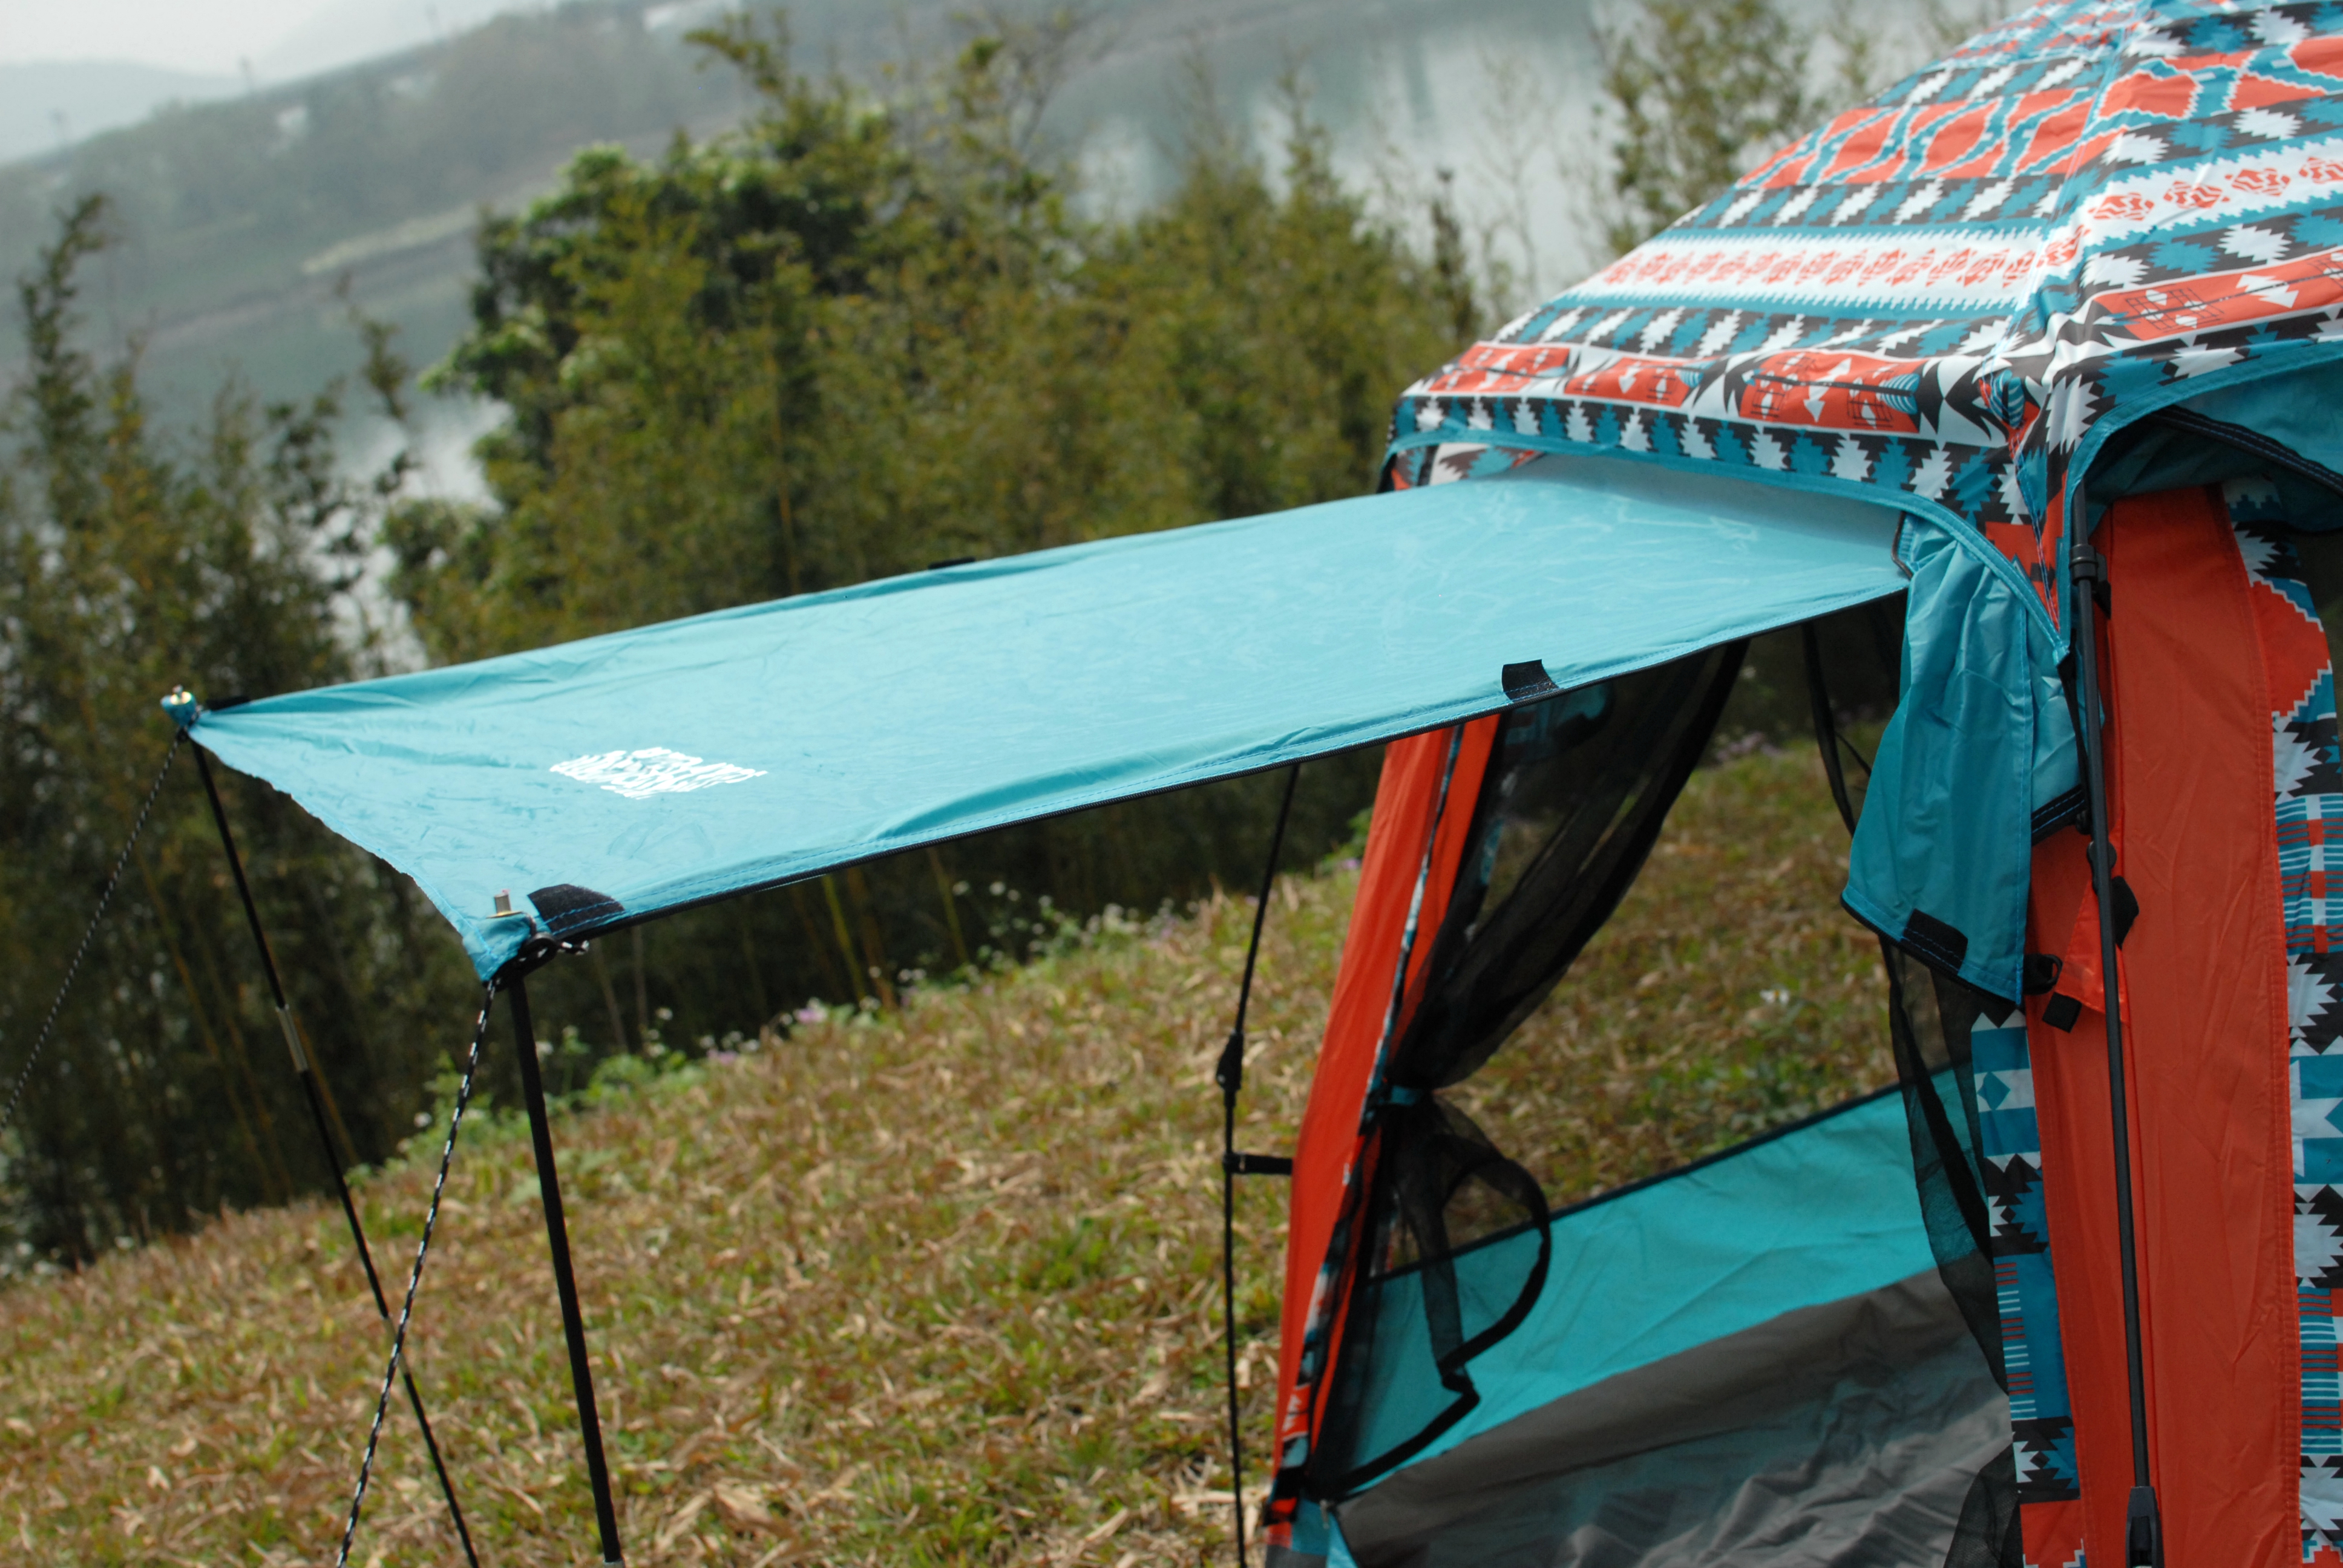 踏青露营带什么户外品牌图途的帐篷桌椅野餐垫等装备推荐